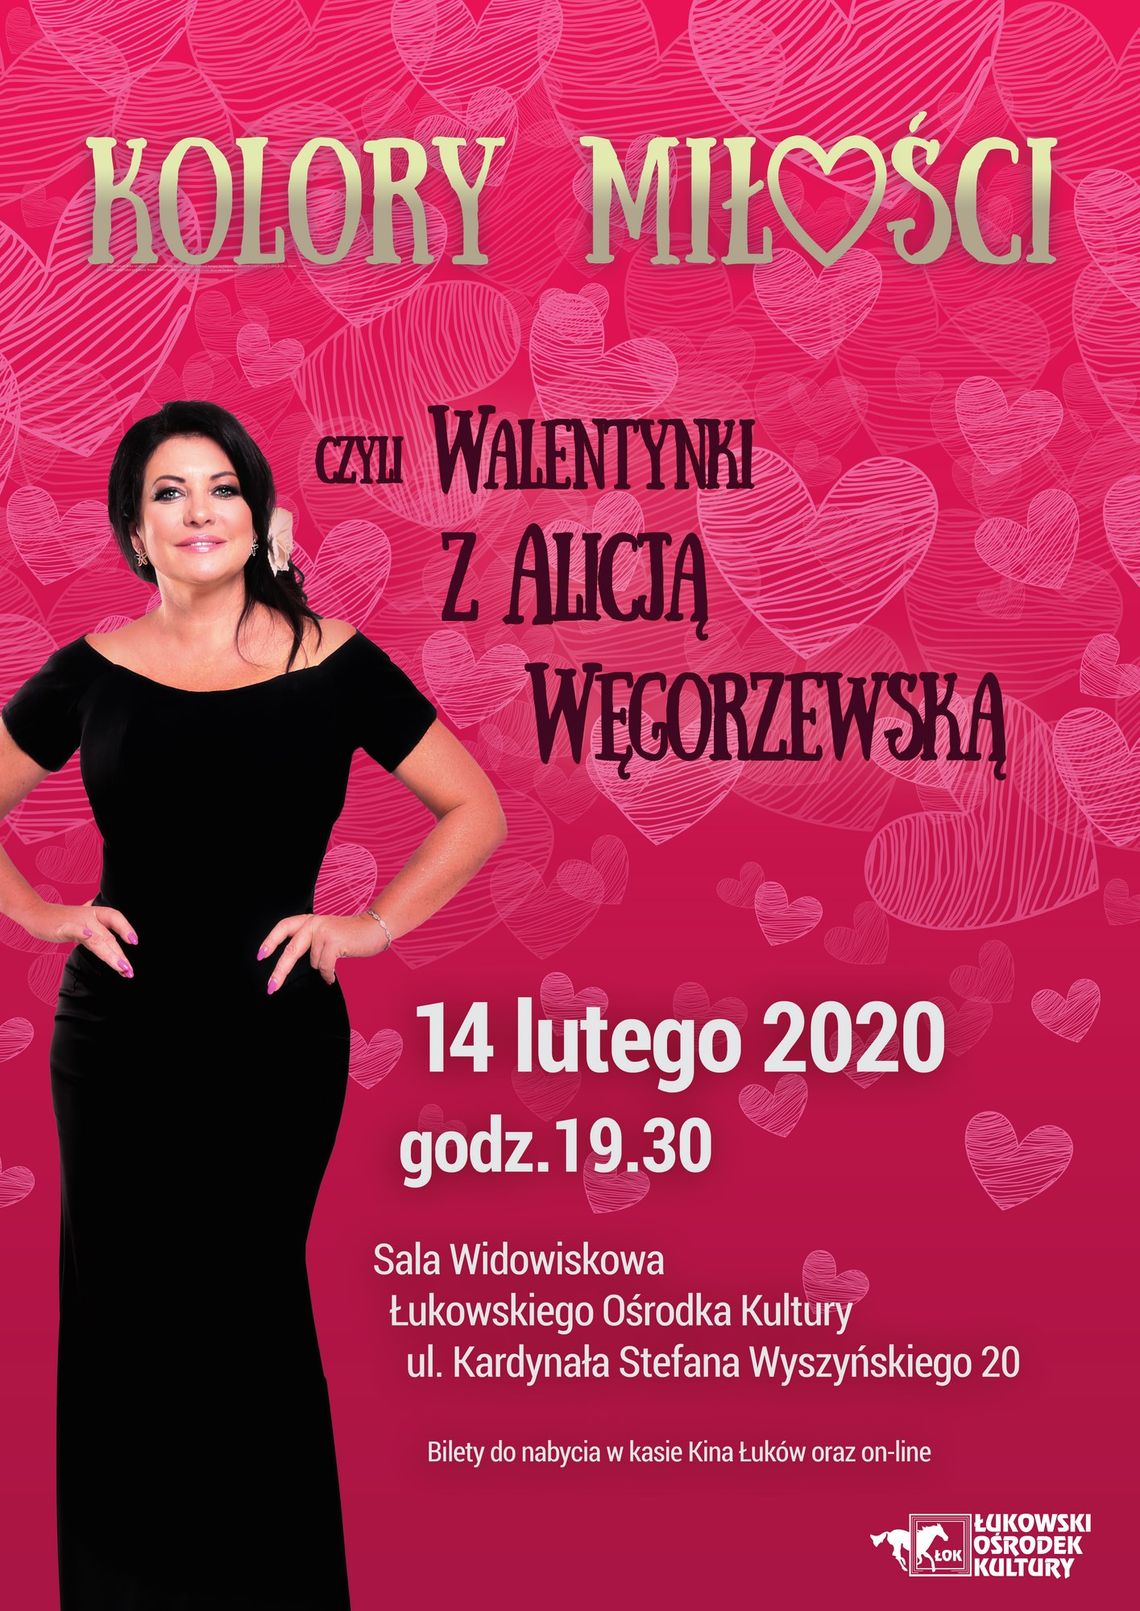 Walentynki z Gwiazdą, czyli Kolory Miłości w wykonaniu Alicji Węgorzewskiej /14 lutego 2020